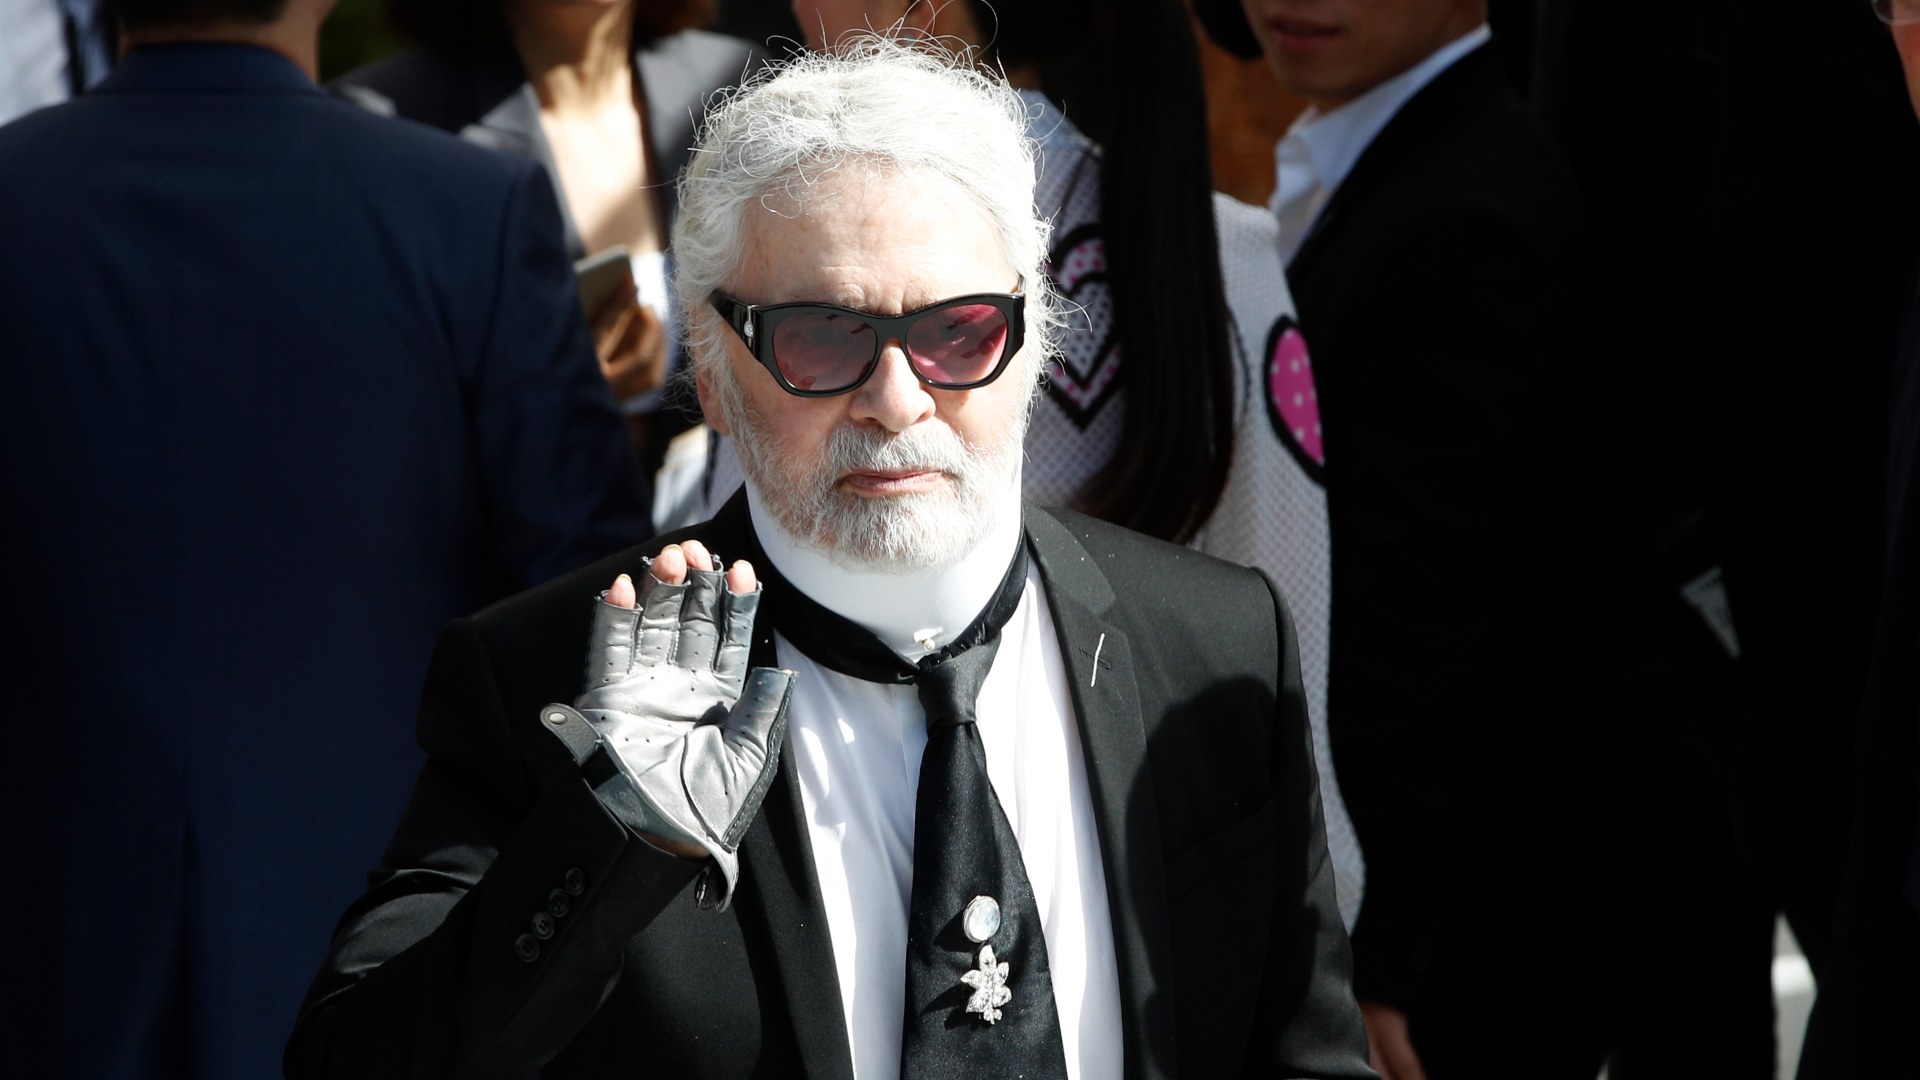 La firma de Karl Lagerfeld se une a marcas como Gucci y Michael Kors y renuncia al uso de pieles